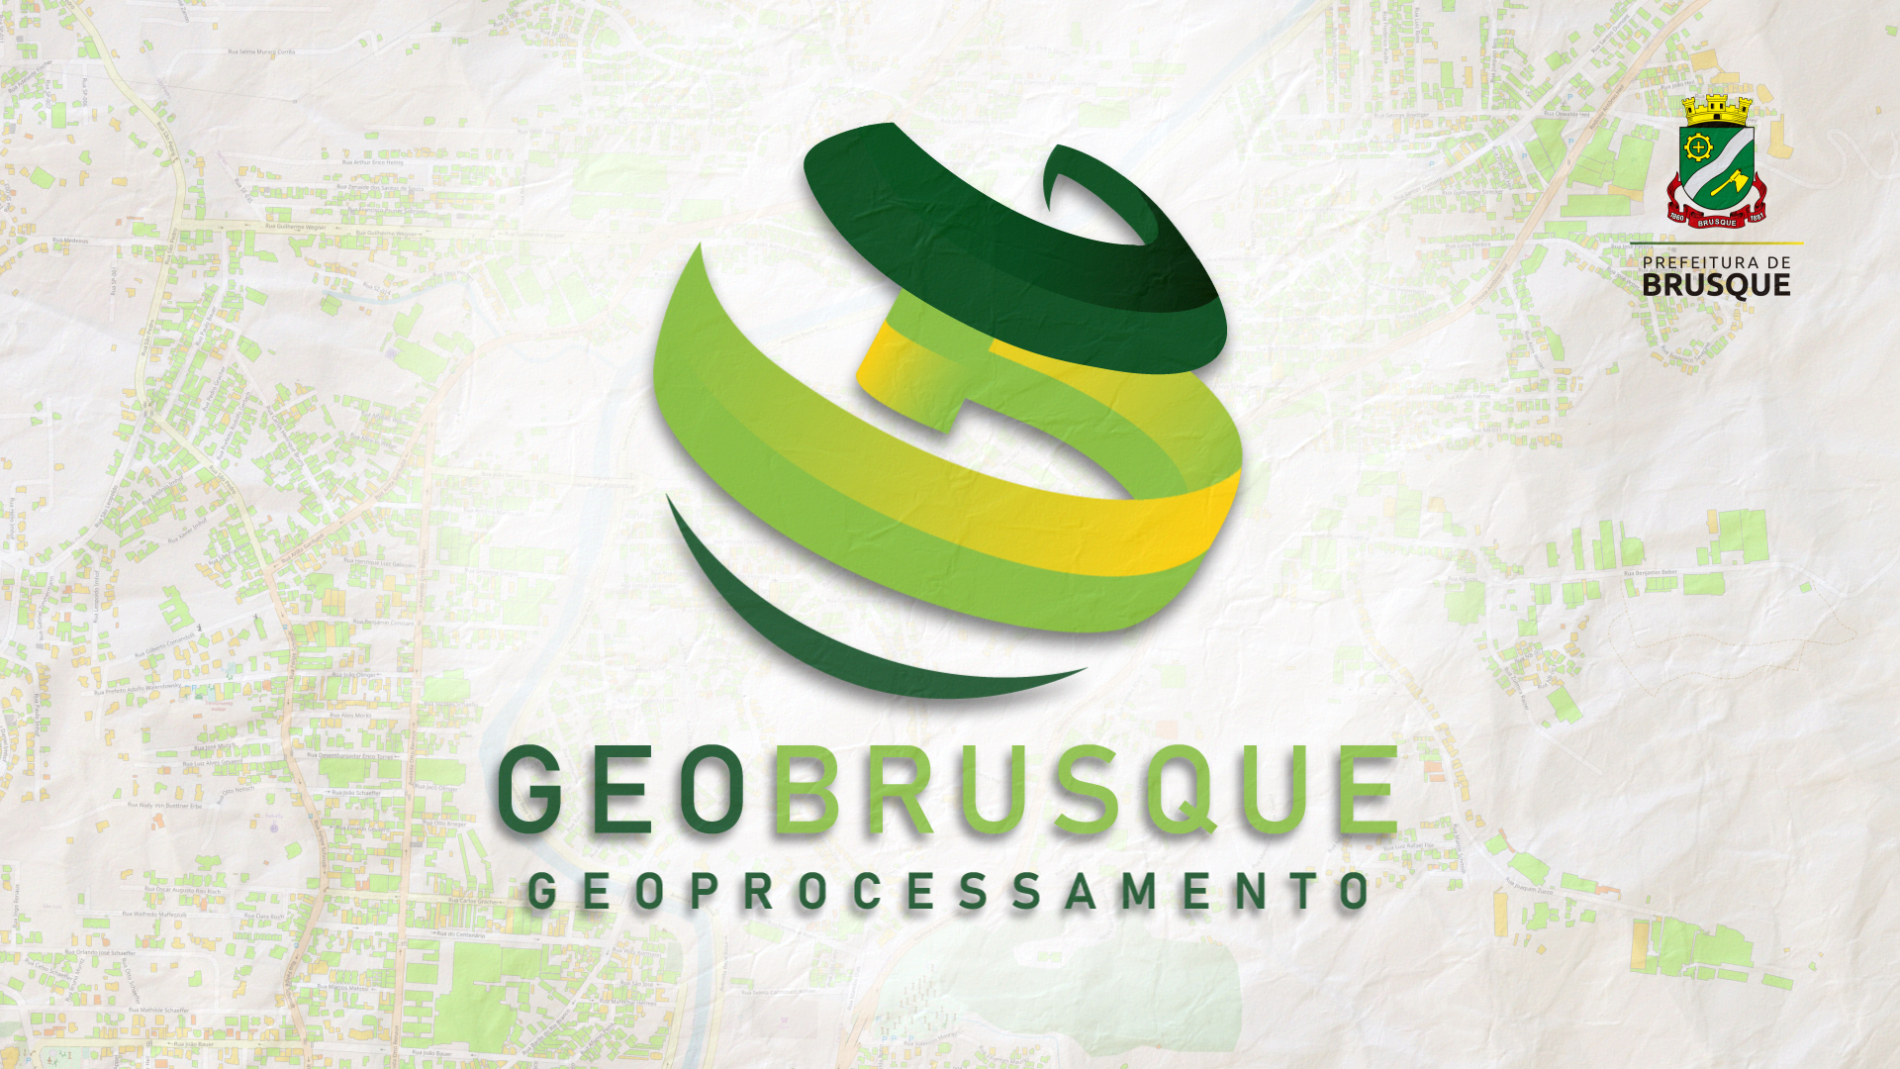 Oitavo vídeo da série GeoBrusque!